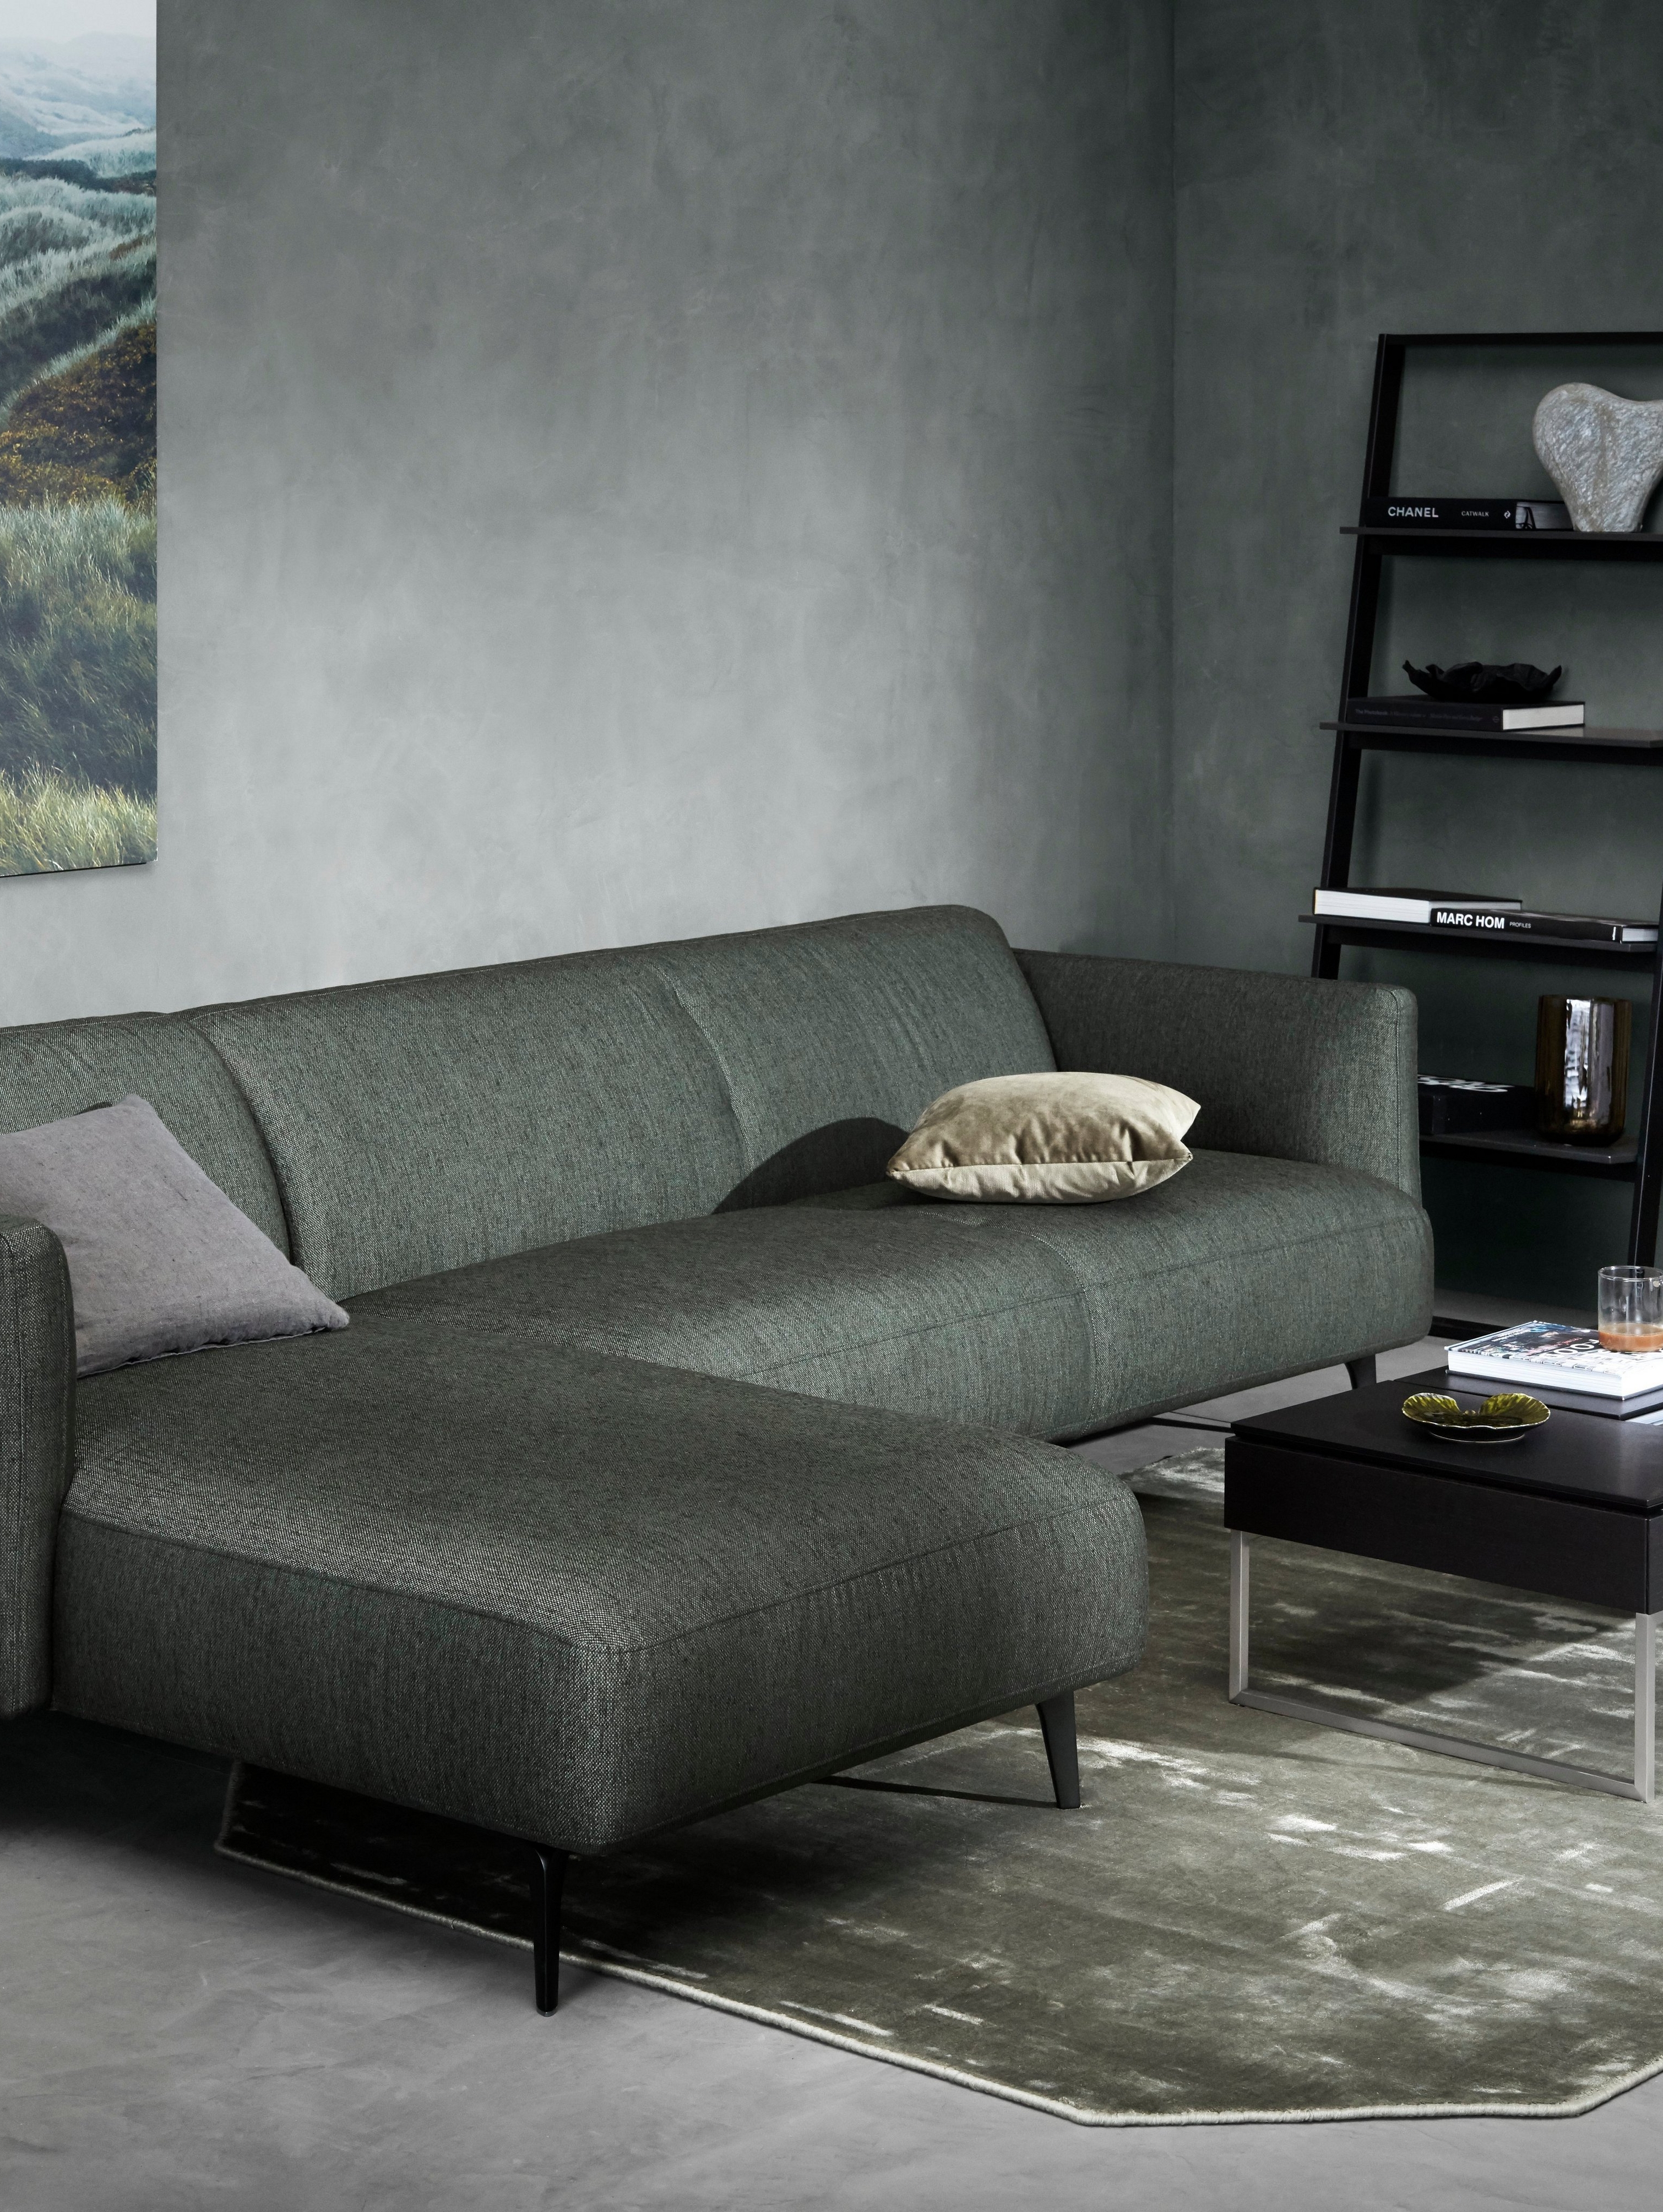 Modena sofa med hvilemodul i mørkegrønn Bristol tekstil i et dempet grønnmalt rom.